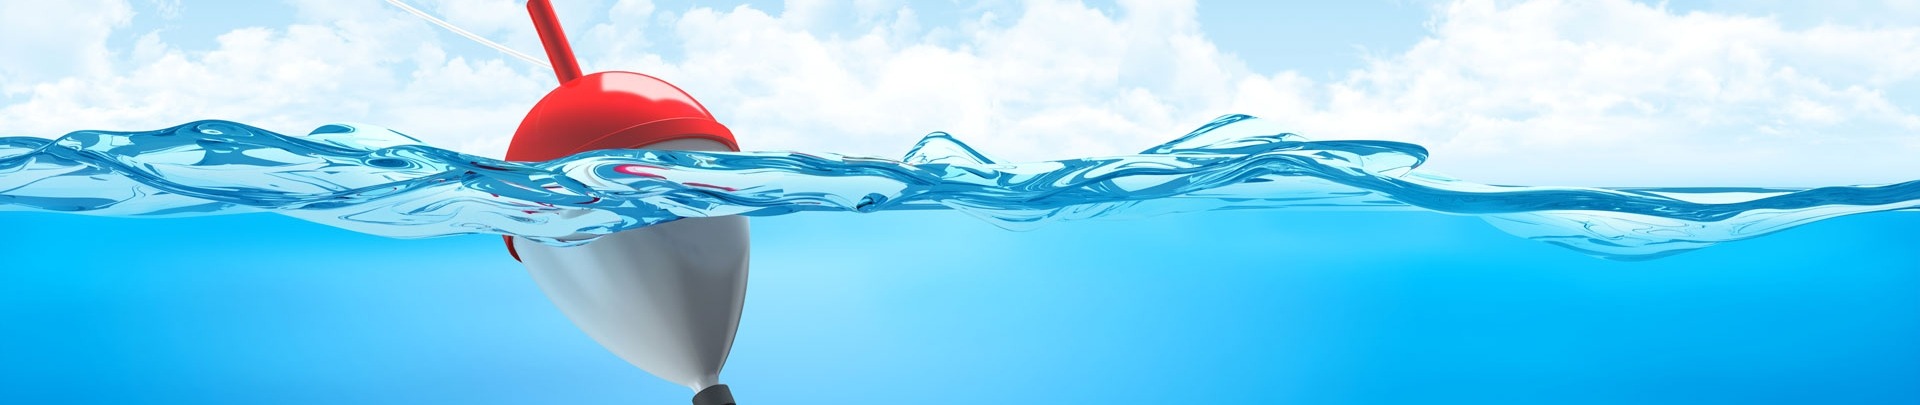 Vishaak met dobber in het water met een blauwe lucht als achtergrond